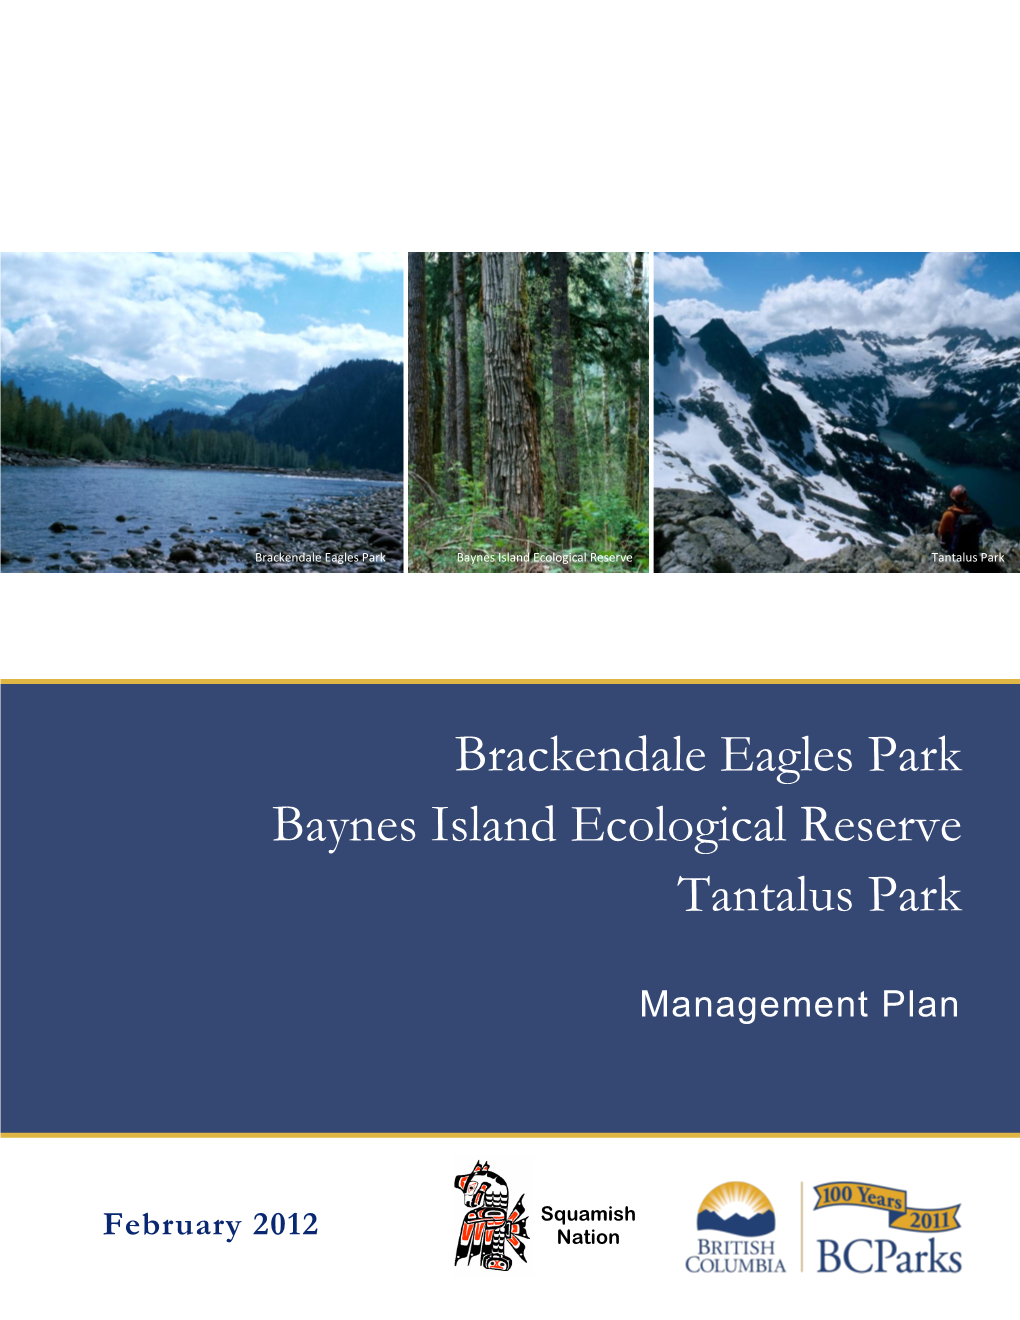 Brackendale Eagles Park Baynes Island Ecological Reserve Tantalus Park